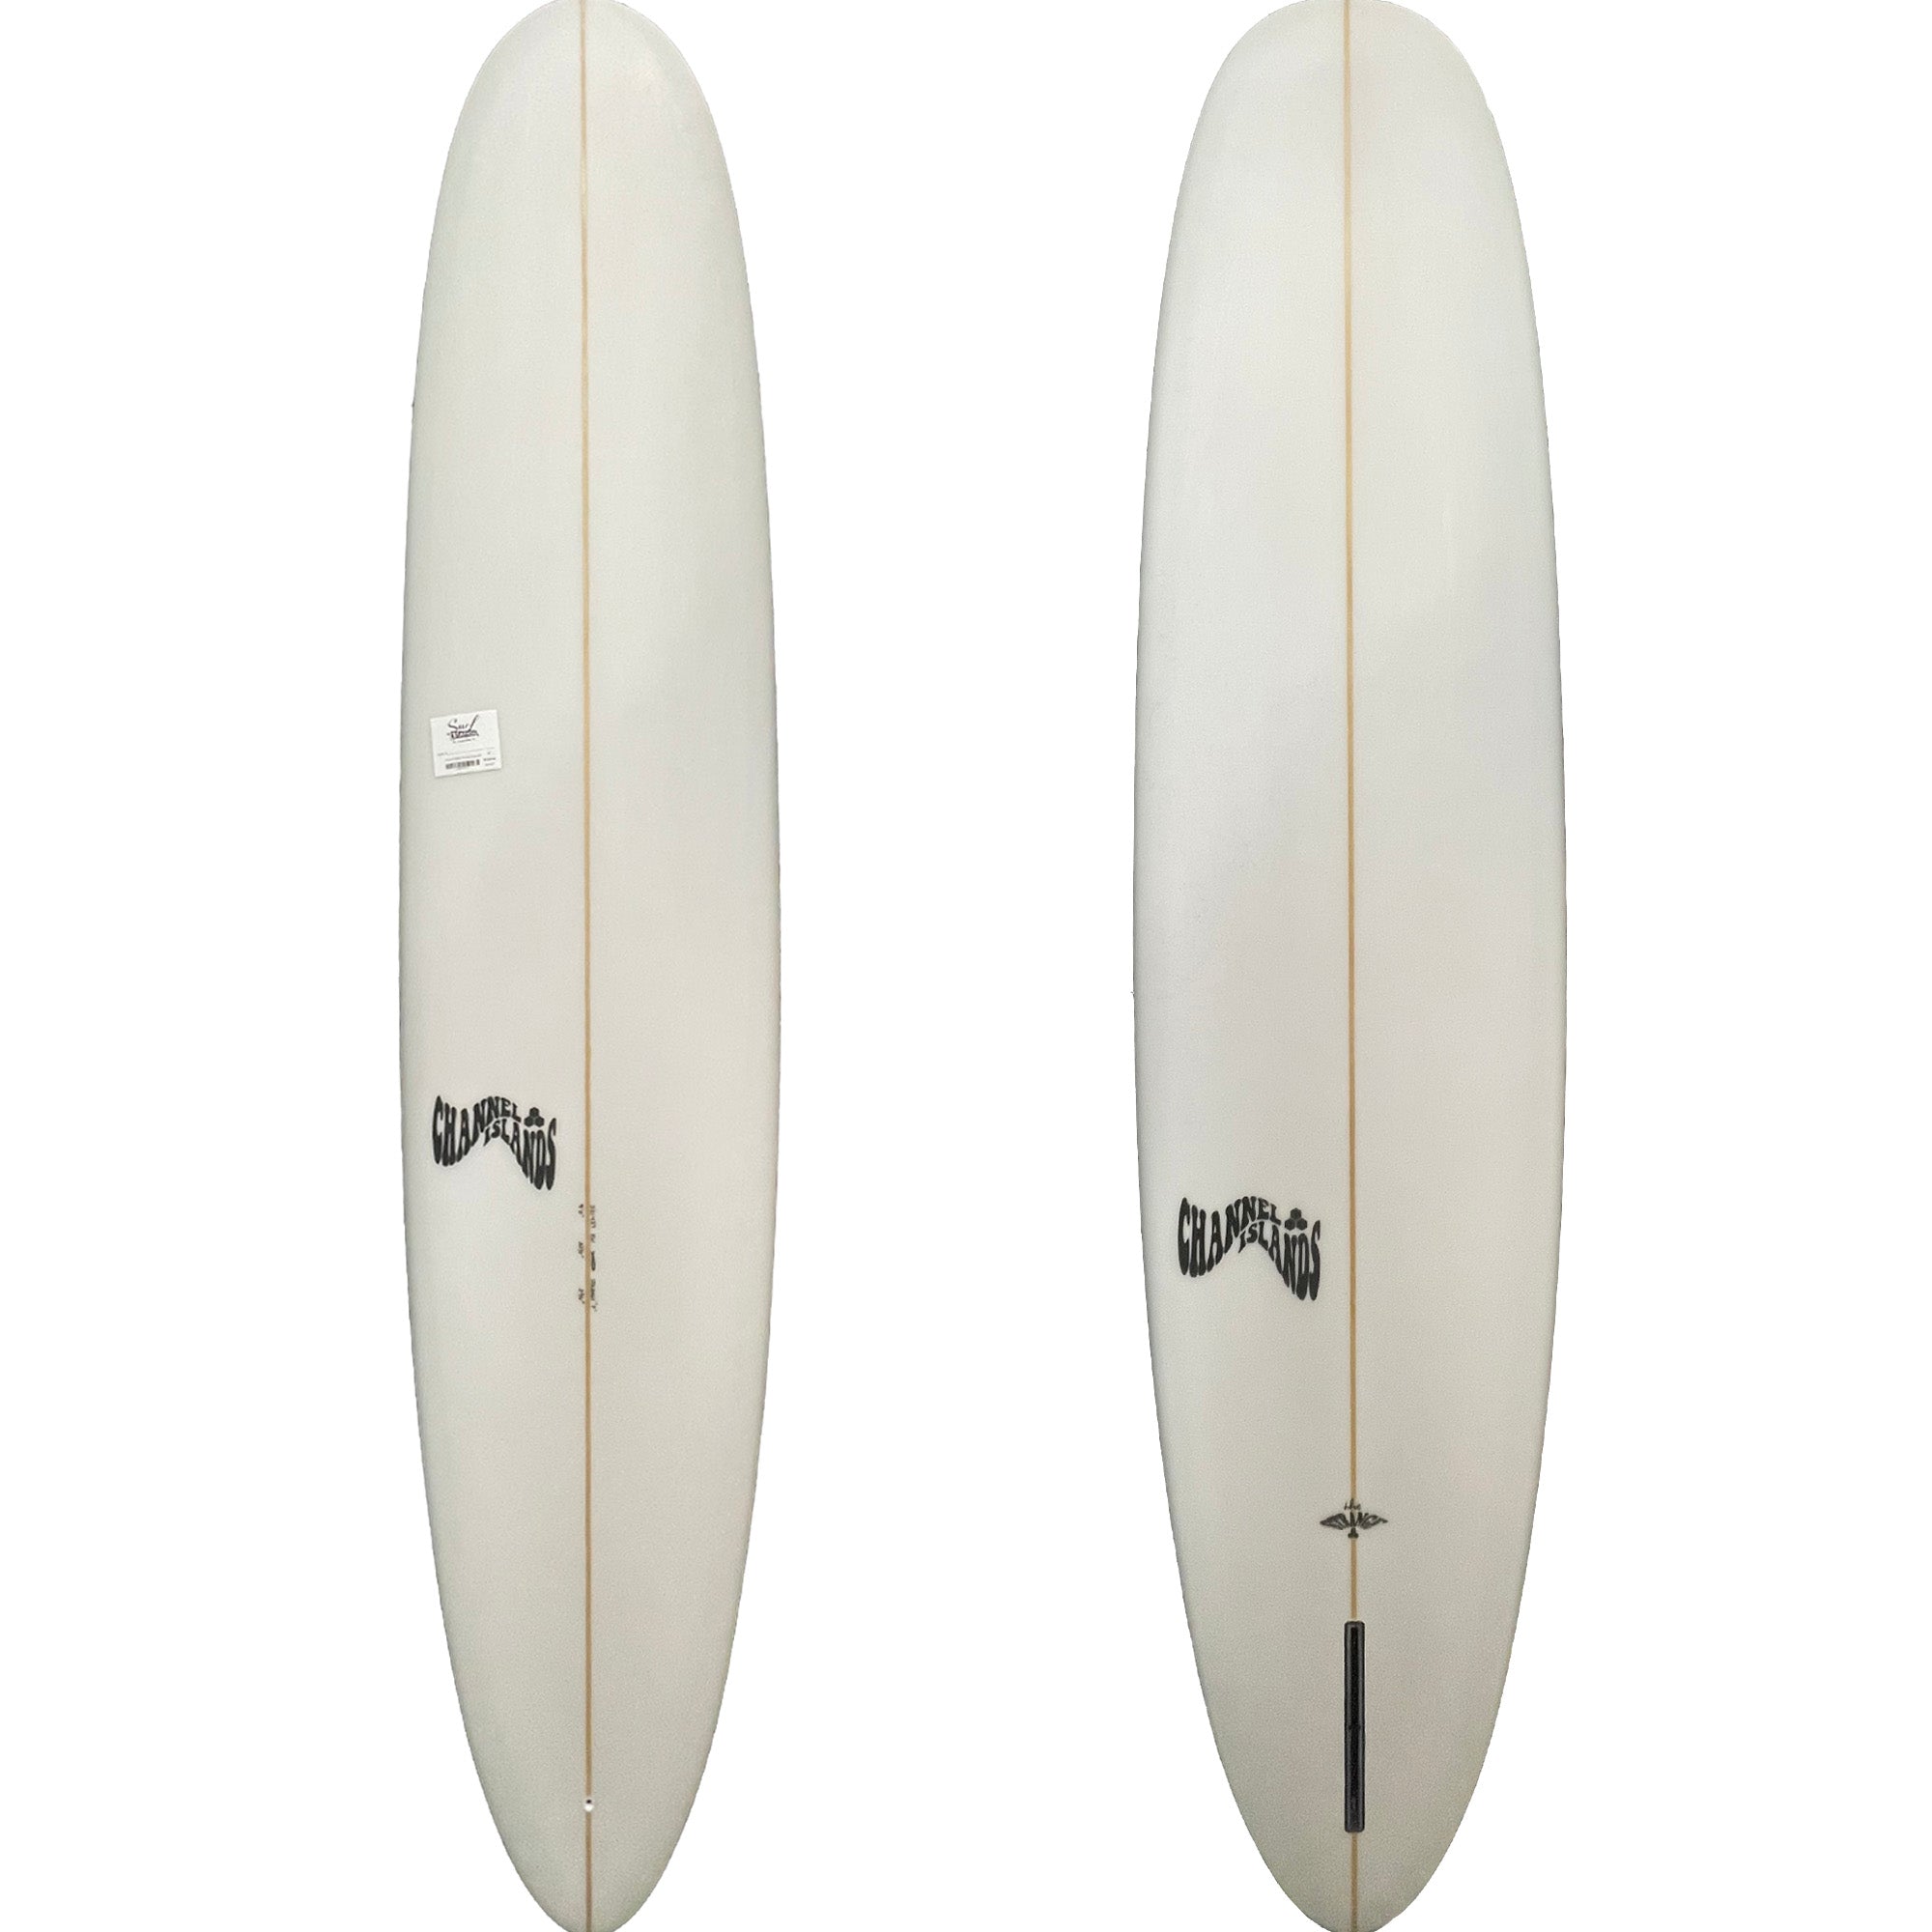 Channel Islands Strange Longboard Surfboard